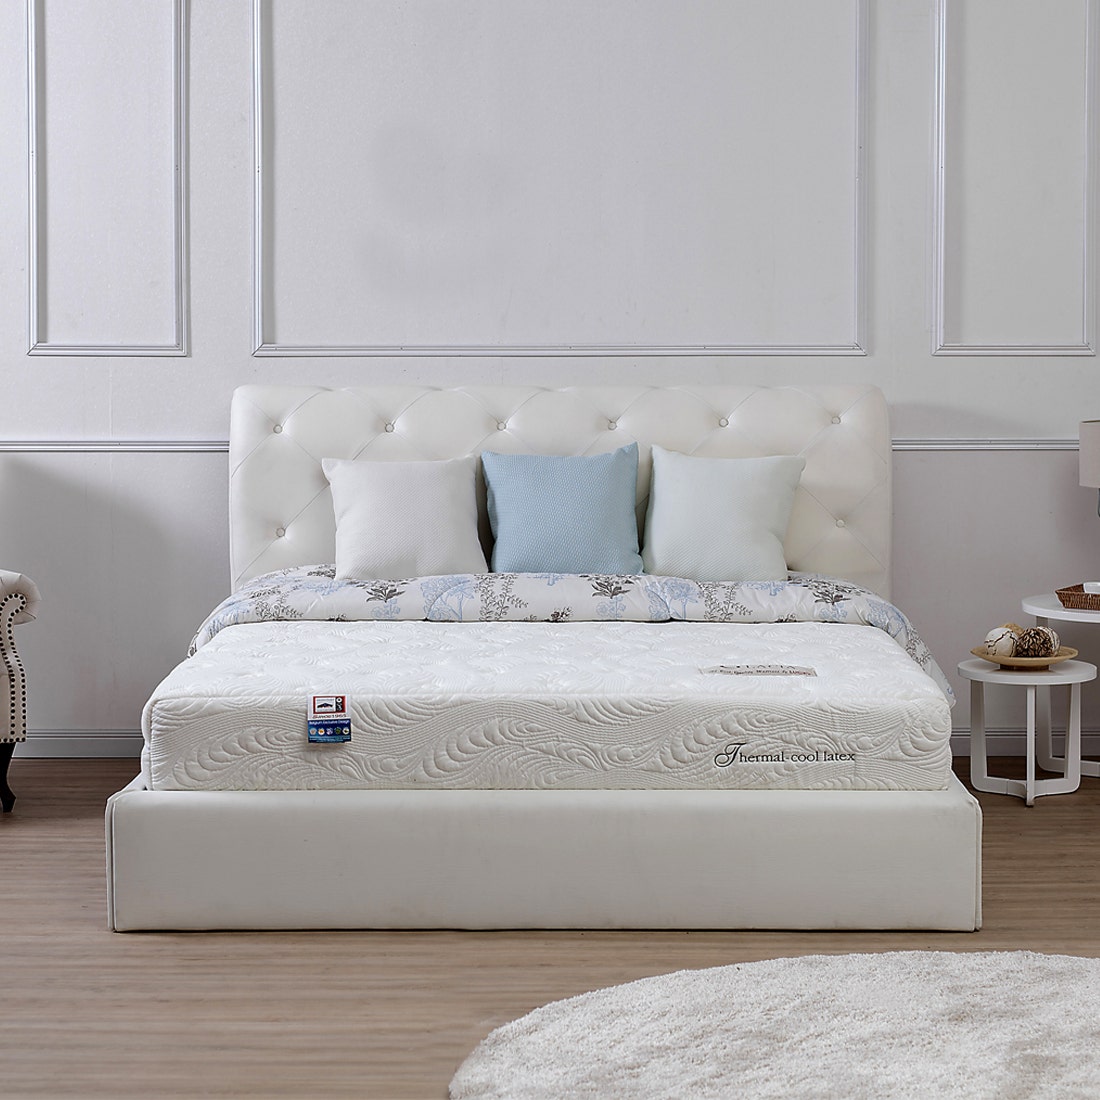 39001248-mattress-bedding-mattresses-latex-mattress-31